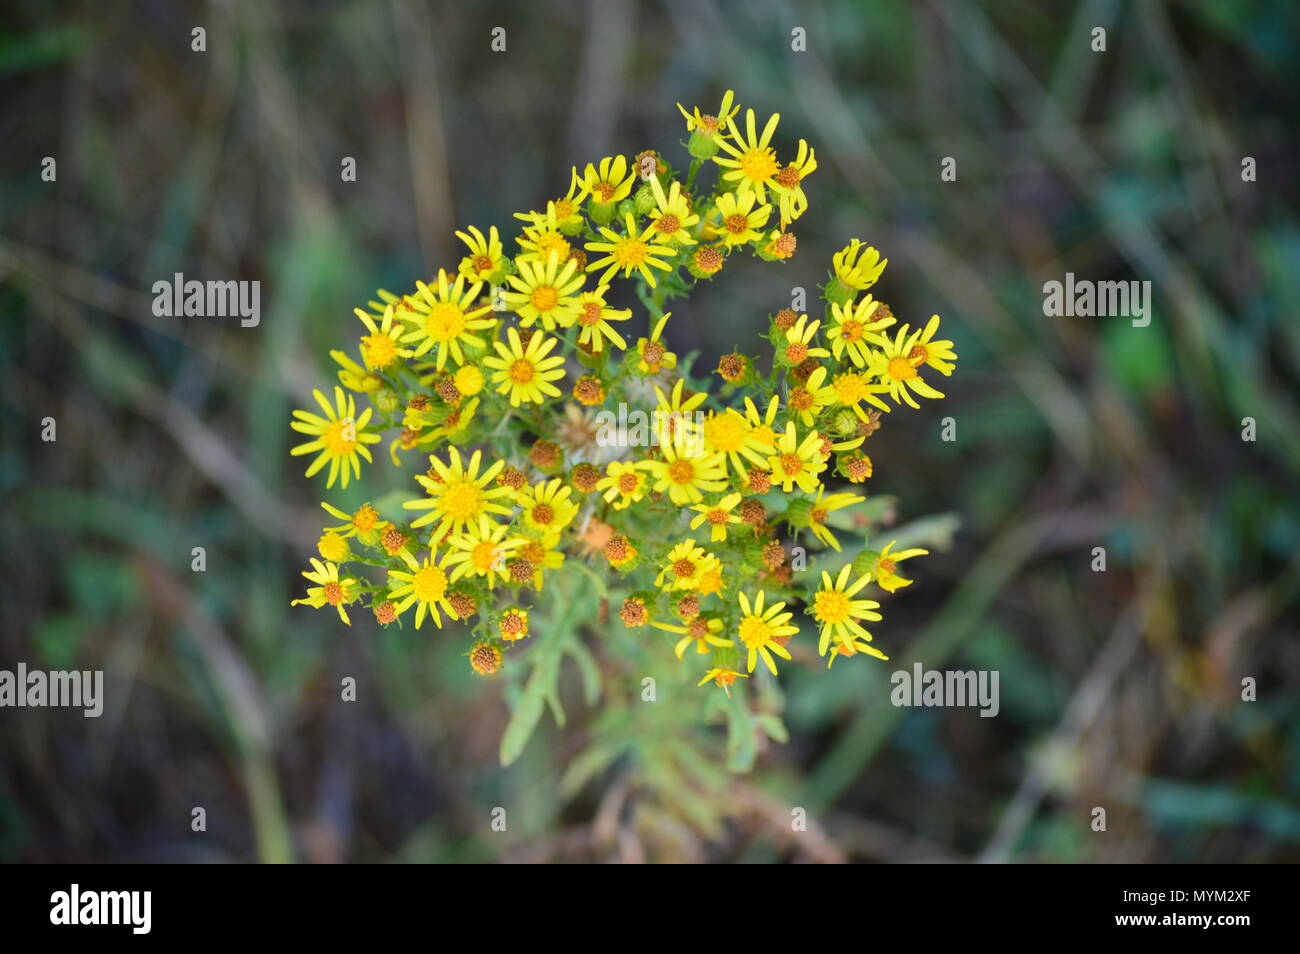 Gelbe Daisy In den Wiesen des Rebedul in Lugo. Blumen Landschaften Natur. August 18, 2016. Rebedul Becerrea Lugo Galizien Spanien. Stockfoto